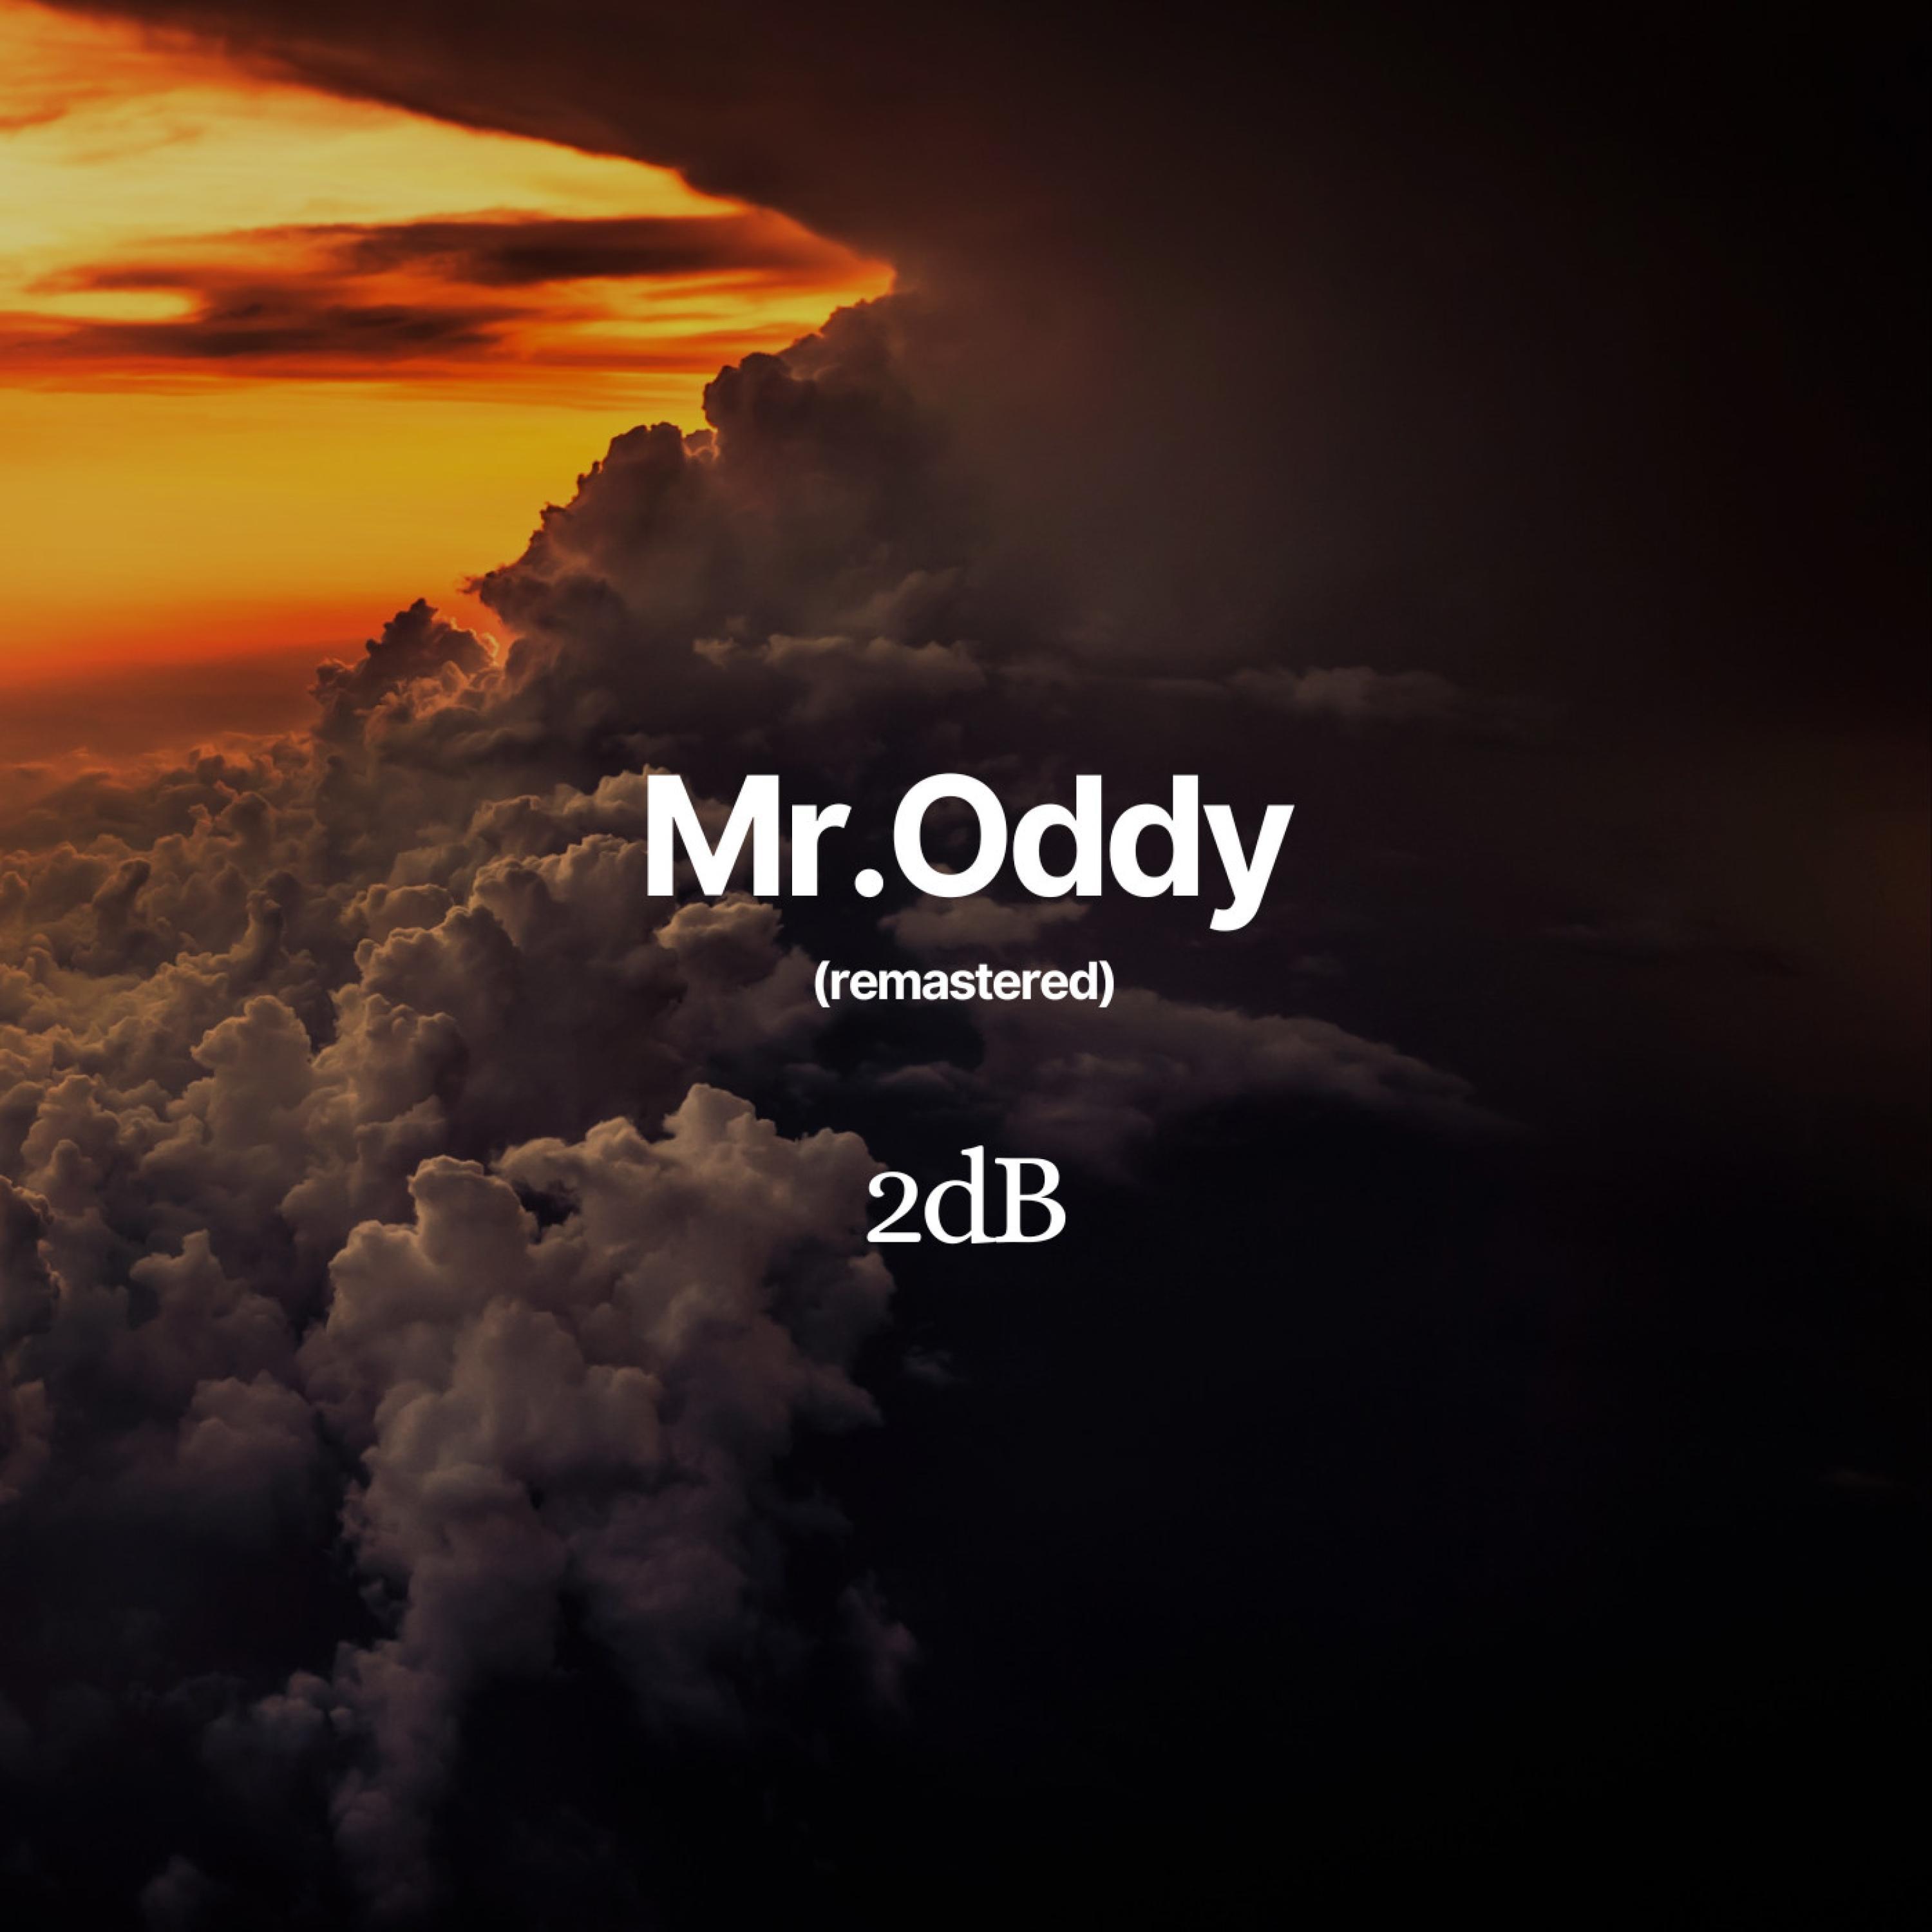 2DB - Mr.Oddy (remastered)